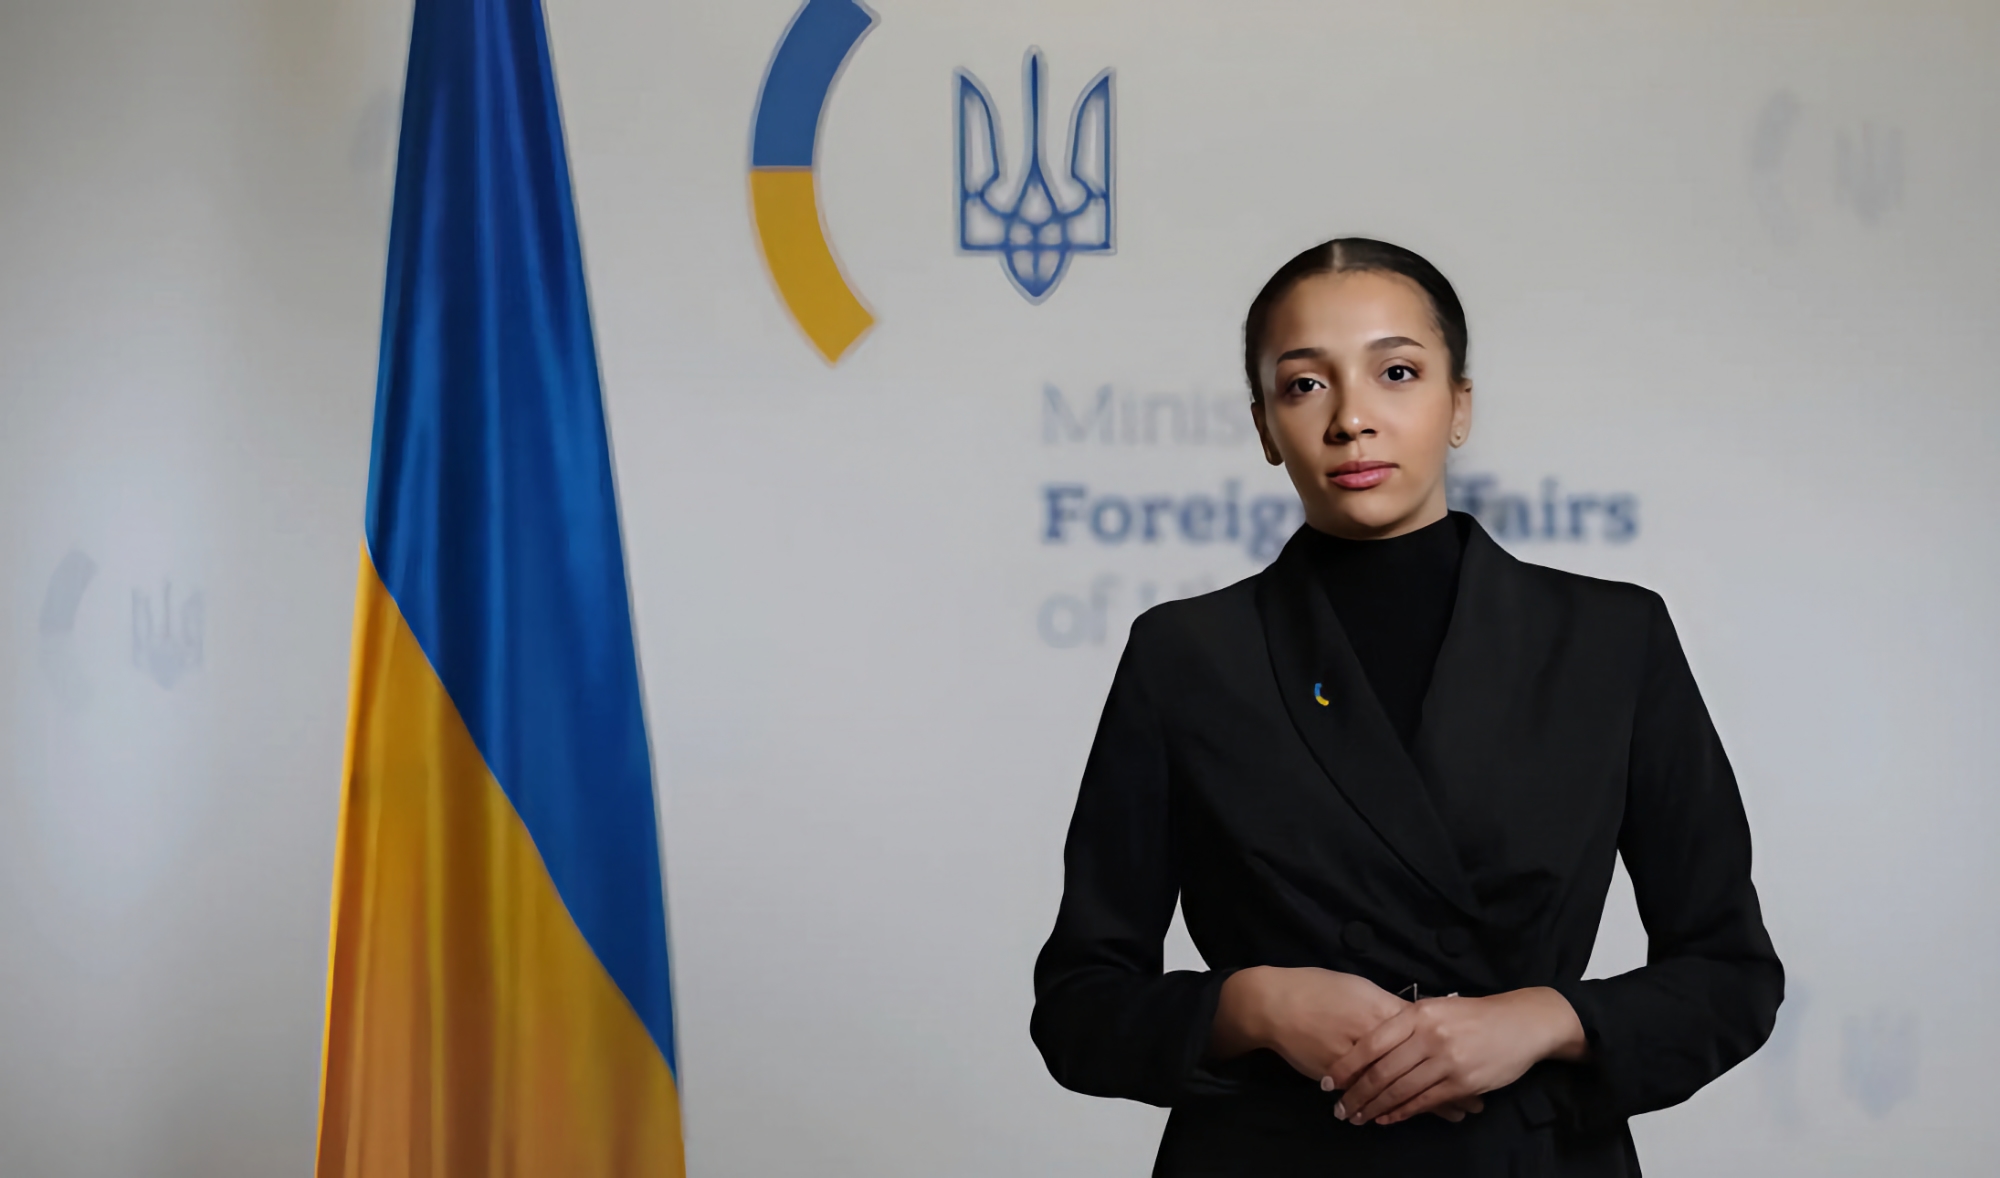 МЗС України анонсувало ШІ-аватара Вікторію, вона буде відповідати за прес-службу міністерства